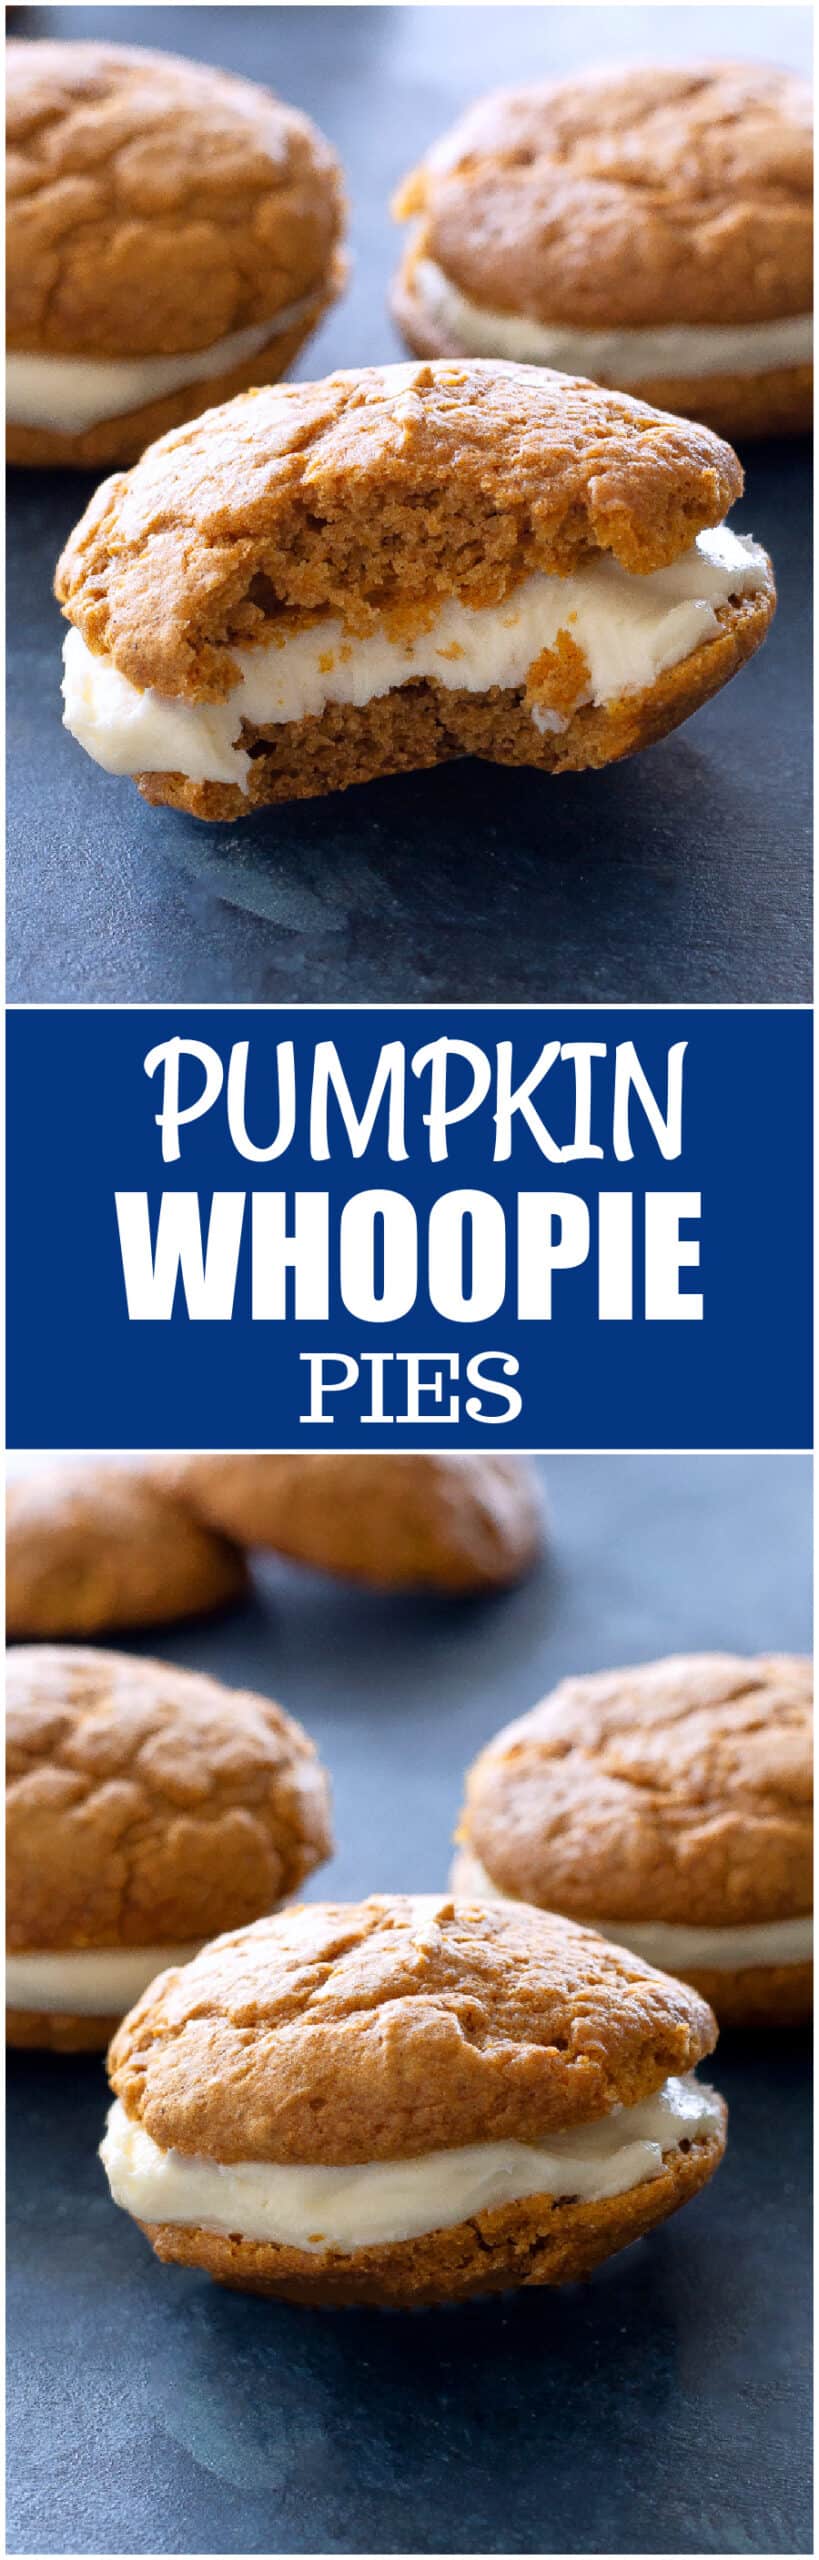 pumpkin whoopie pies